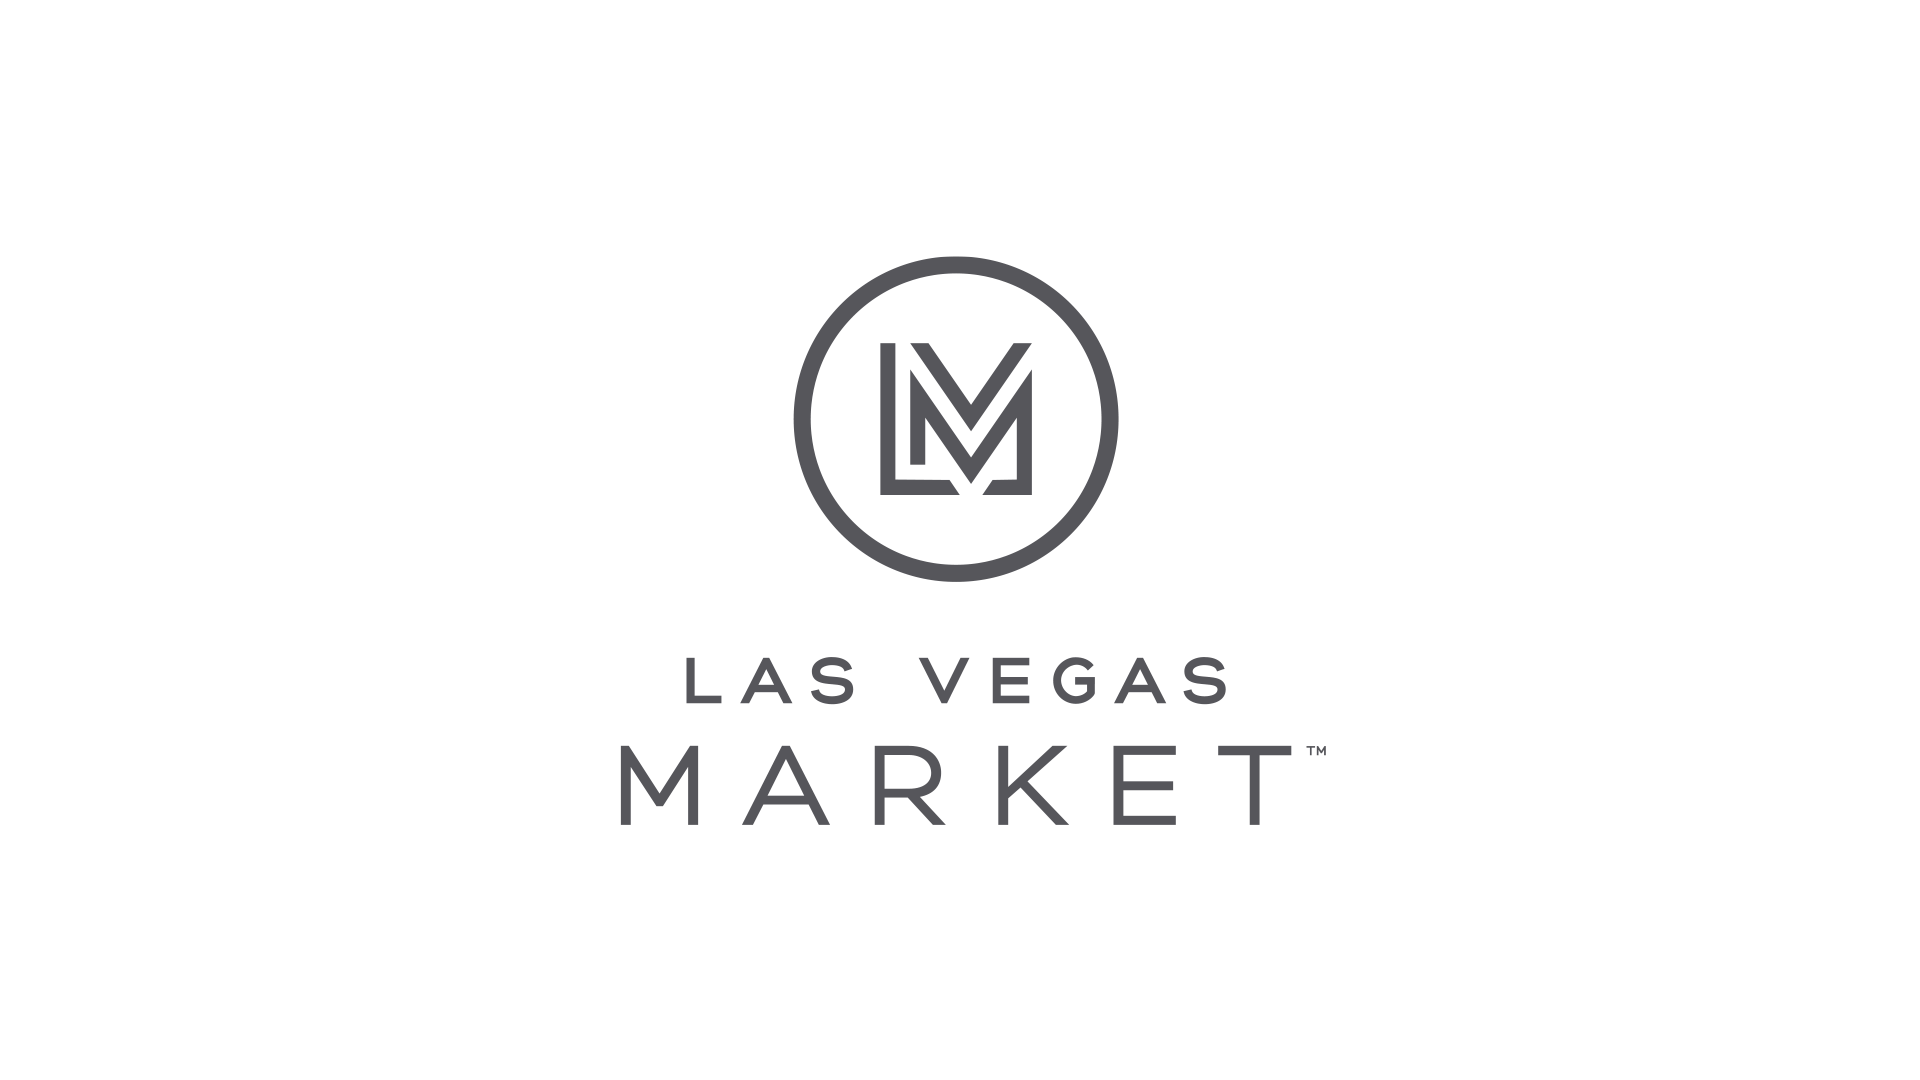 Las Vegas Market